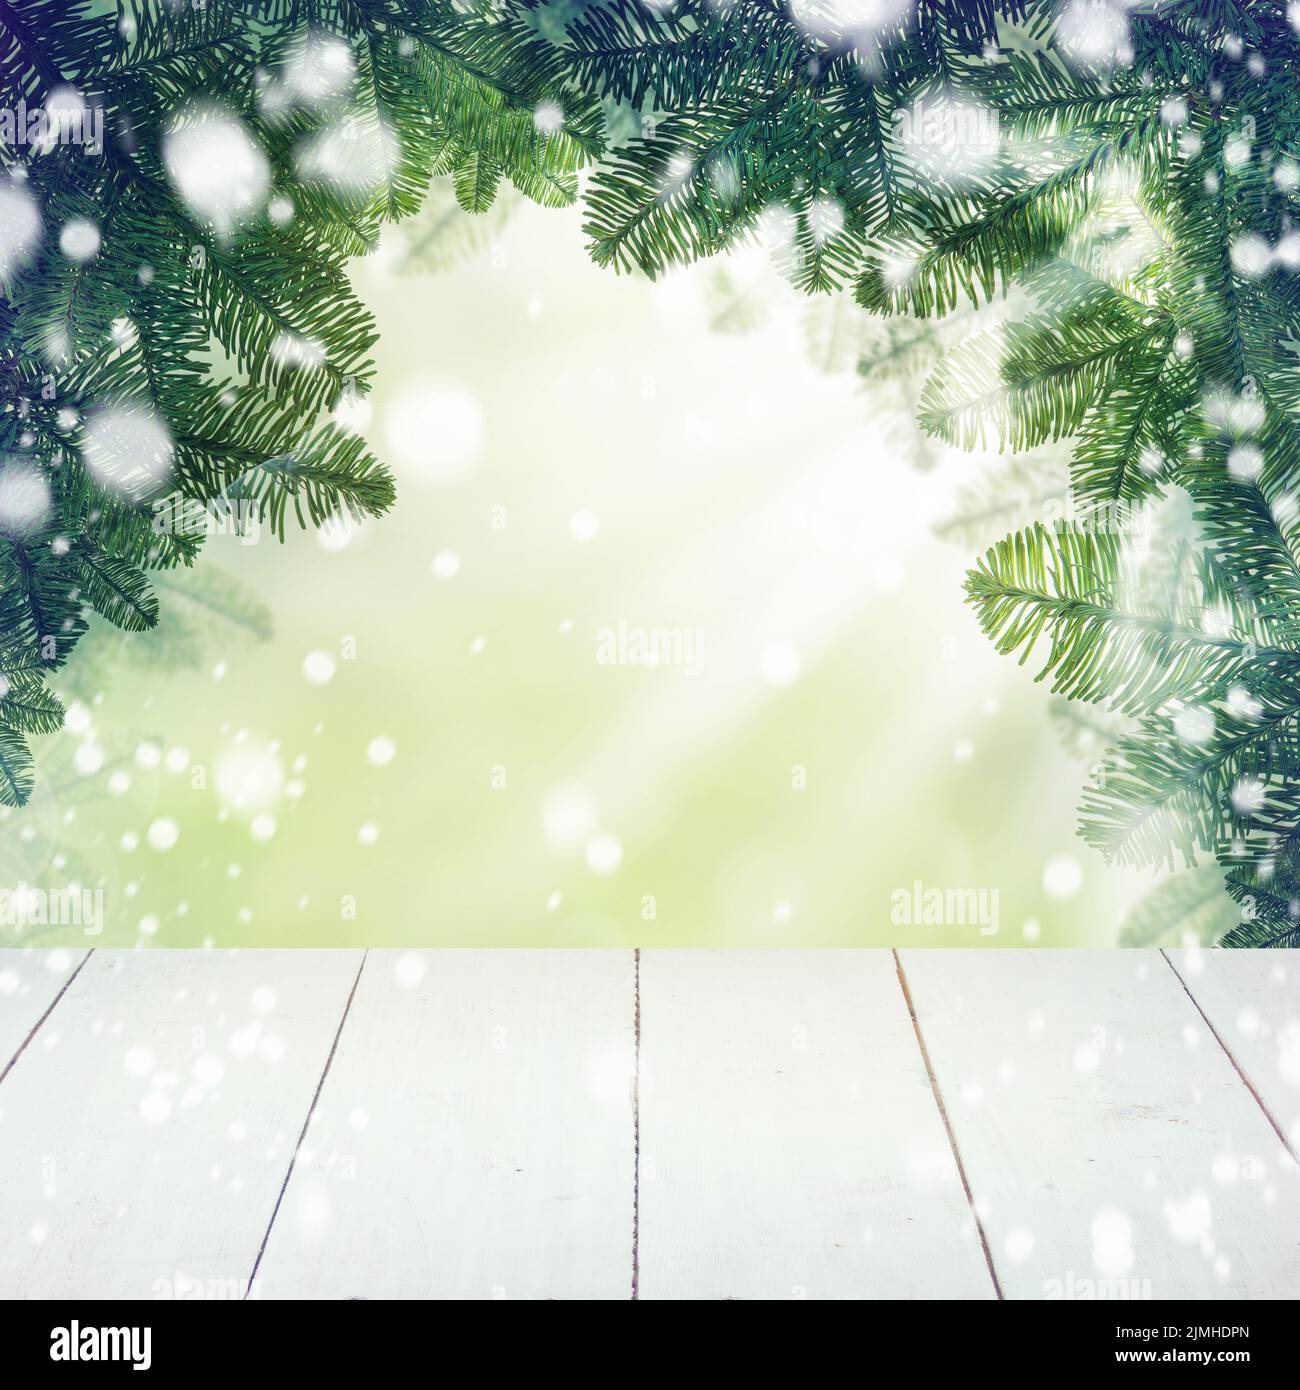 Borde de fondo de Navidad con abeto verde invierno y mesa de madera blanca vacía Foto de stock